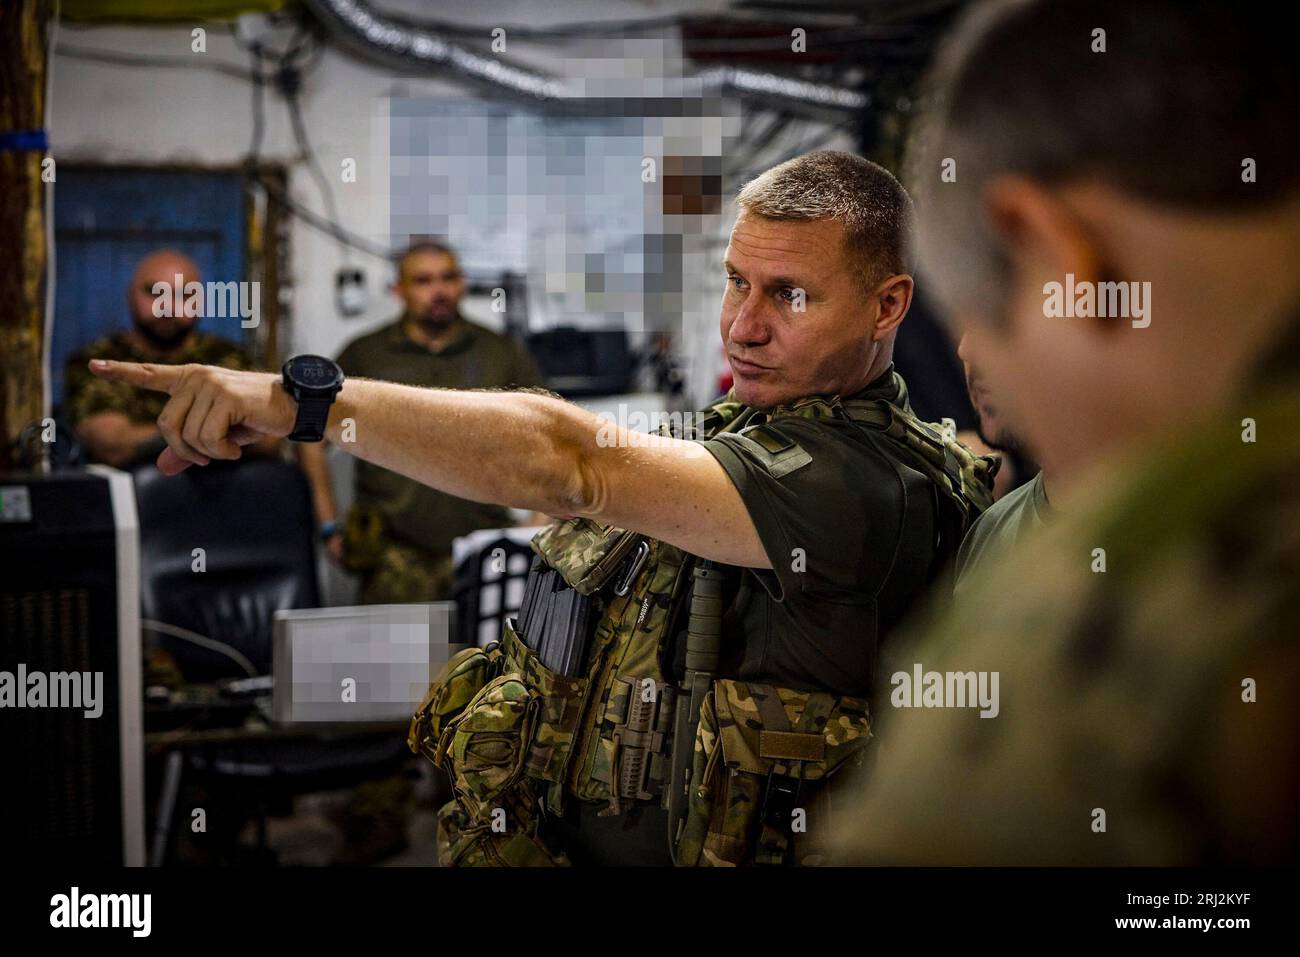 A Donetsk, regione Ucraina, il presidente Volodymyr Zelensky ha visitato il posto di comando principale del gruppo operativo e tattico Soledar e ha conferito medaglie ai difensori dell'Ucraina. (Ufficio presidenziale Ucraina) Foto Stock